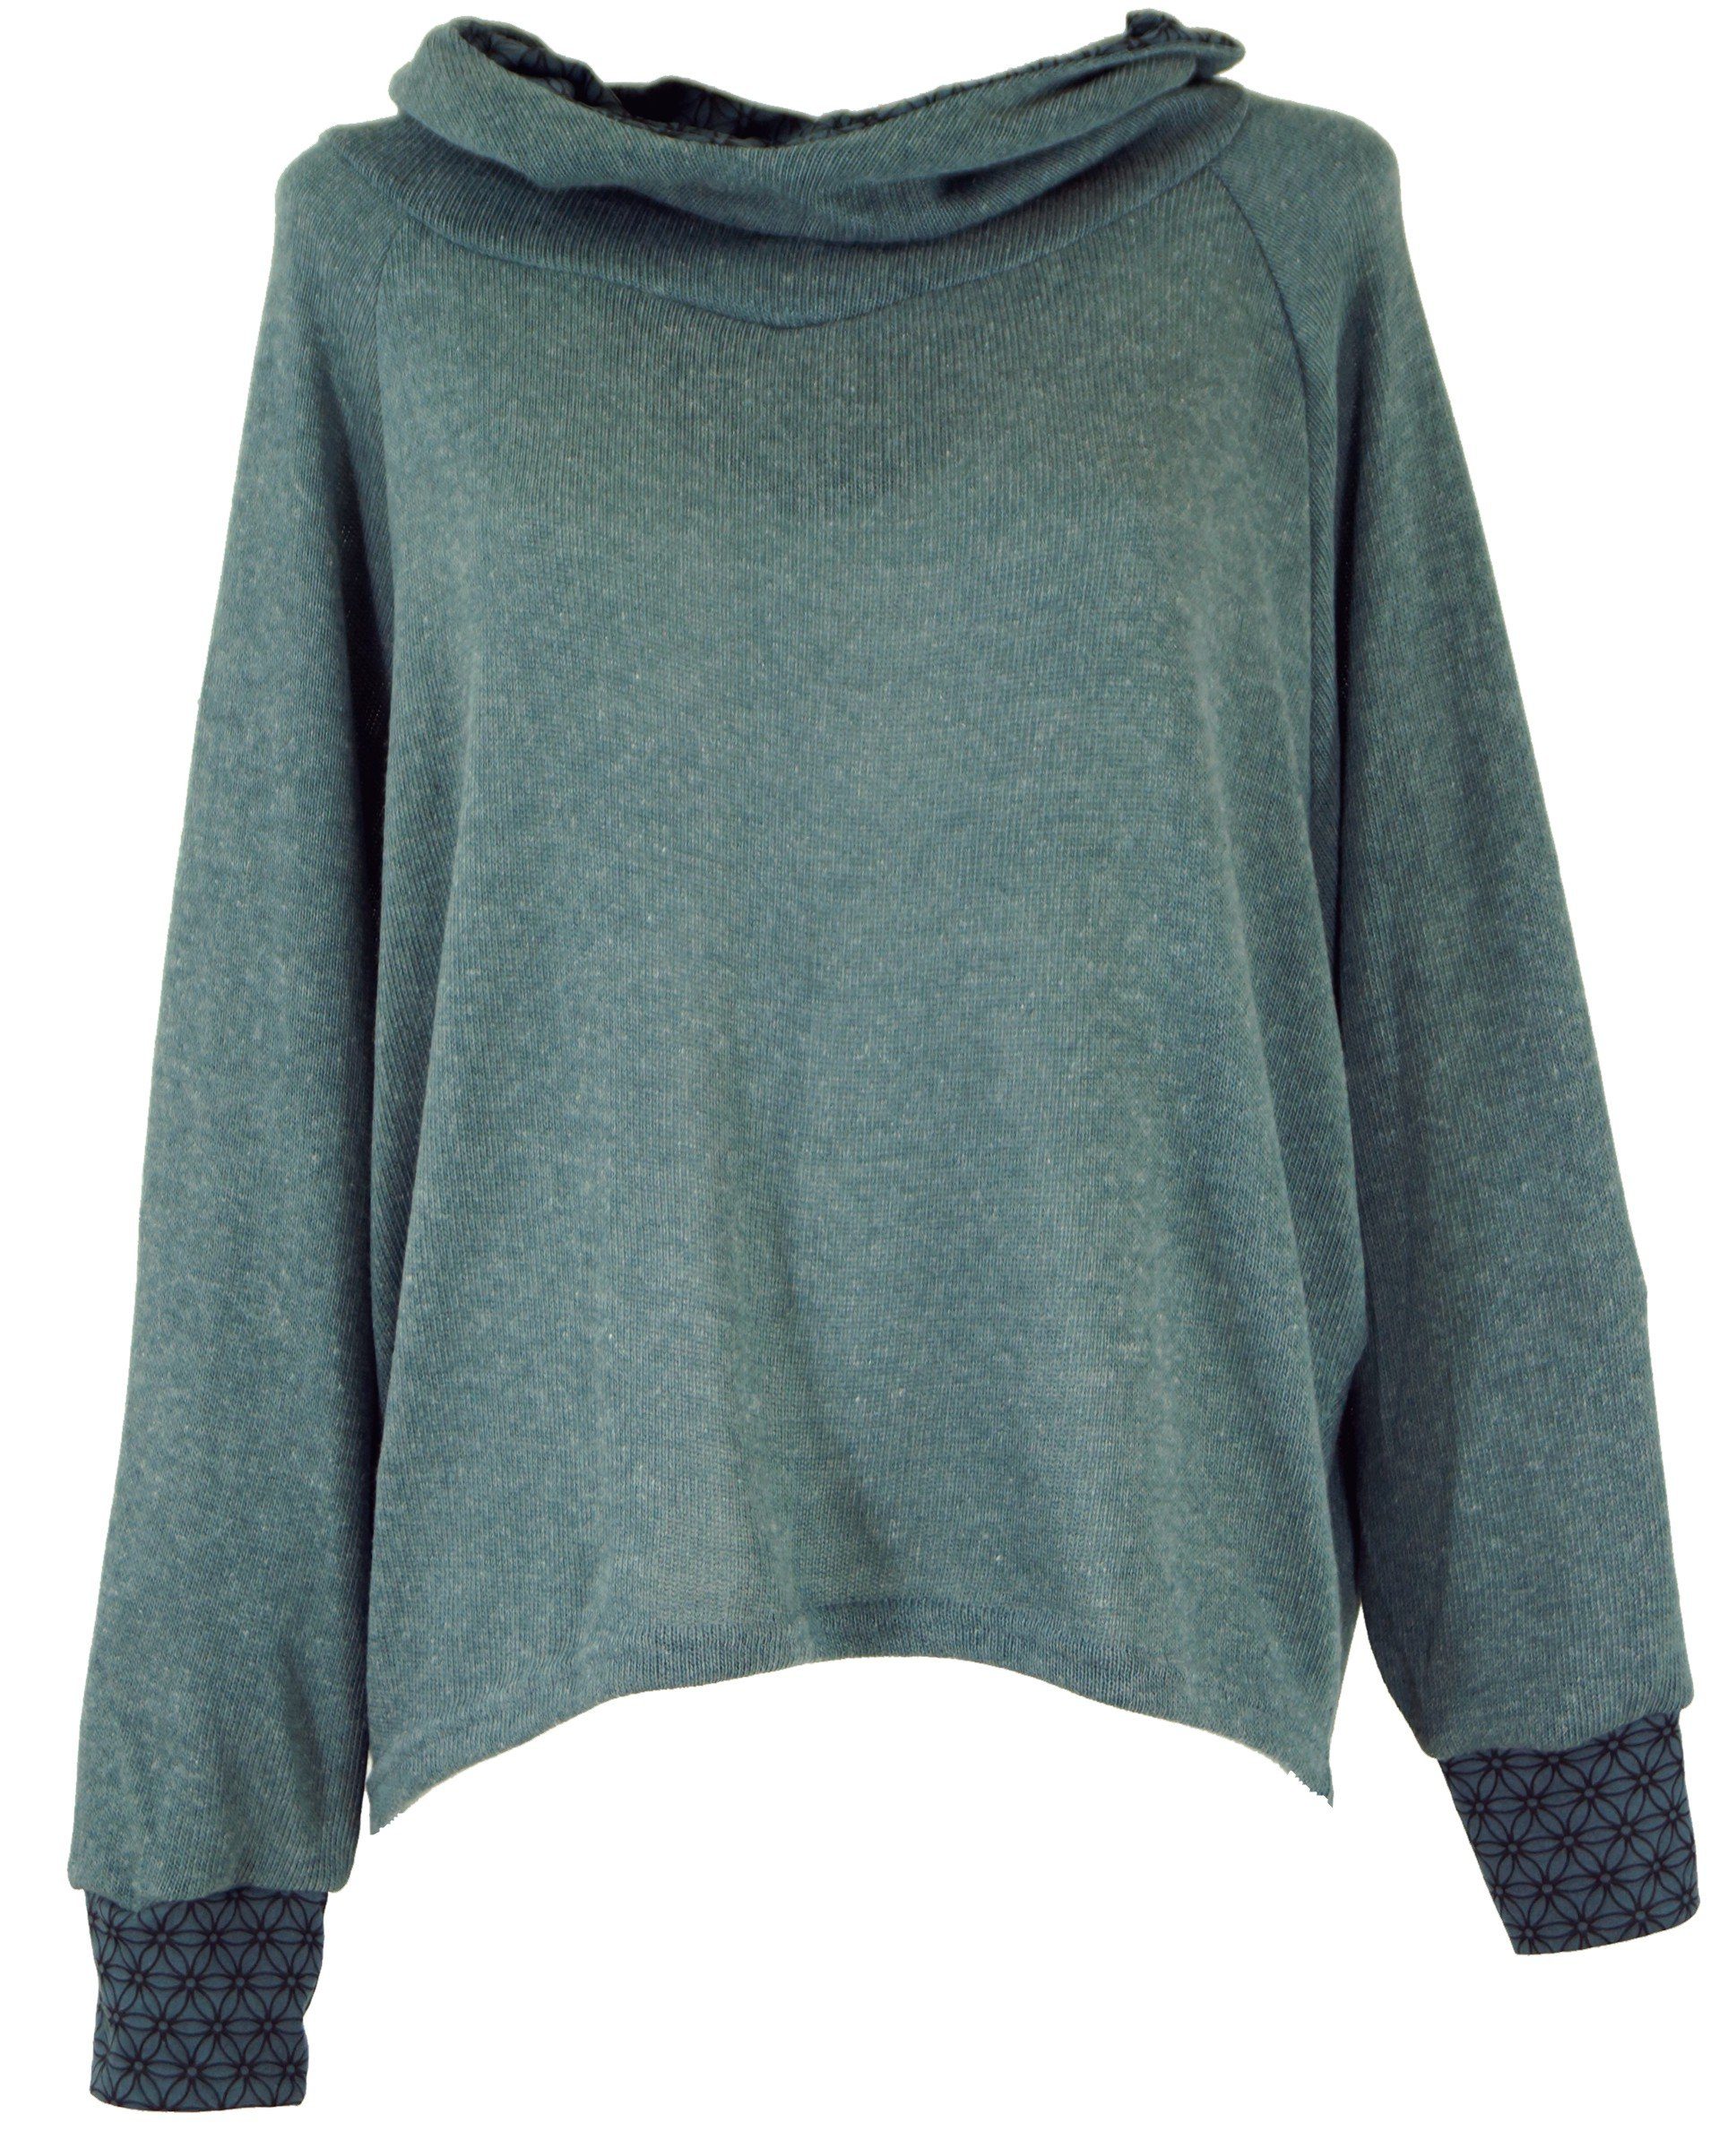 Guru-Shop Longsleeve Hoody, Sweatshirt, Pullover, Kapuzenpullover -.. alternative Bekleidung taubenblau